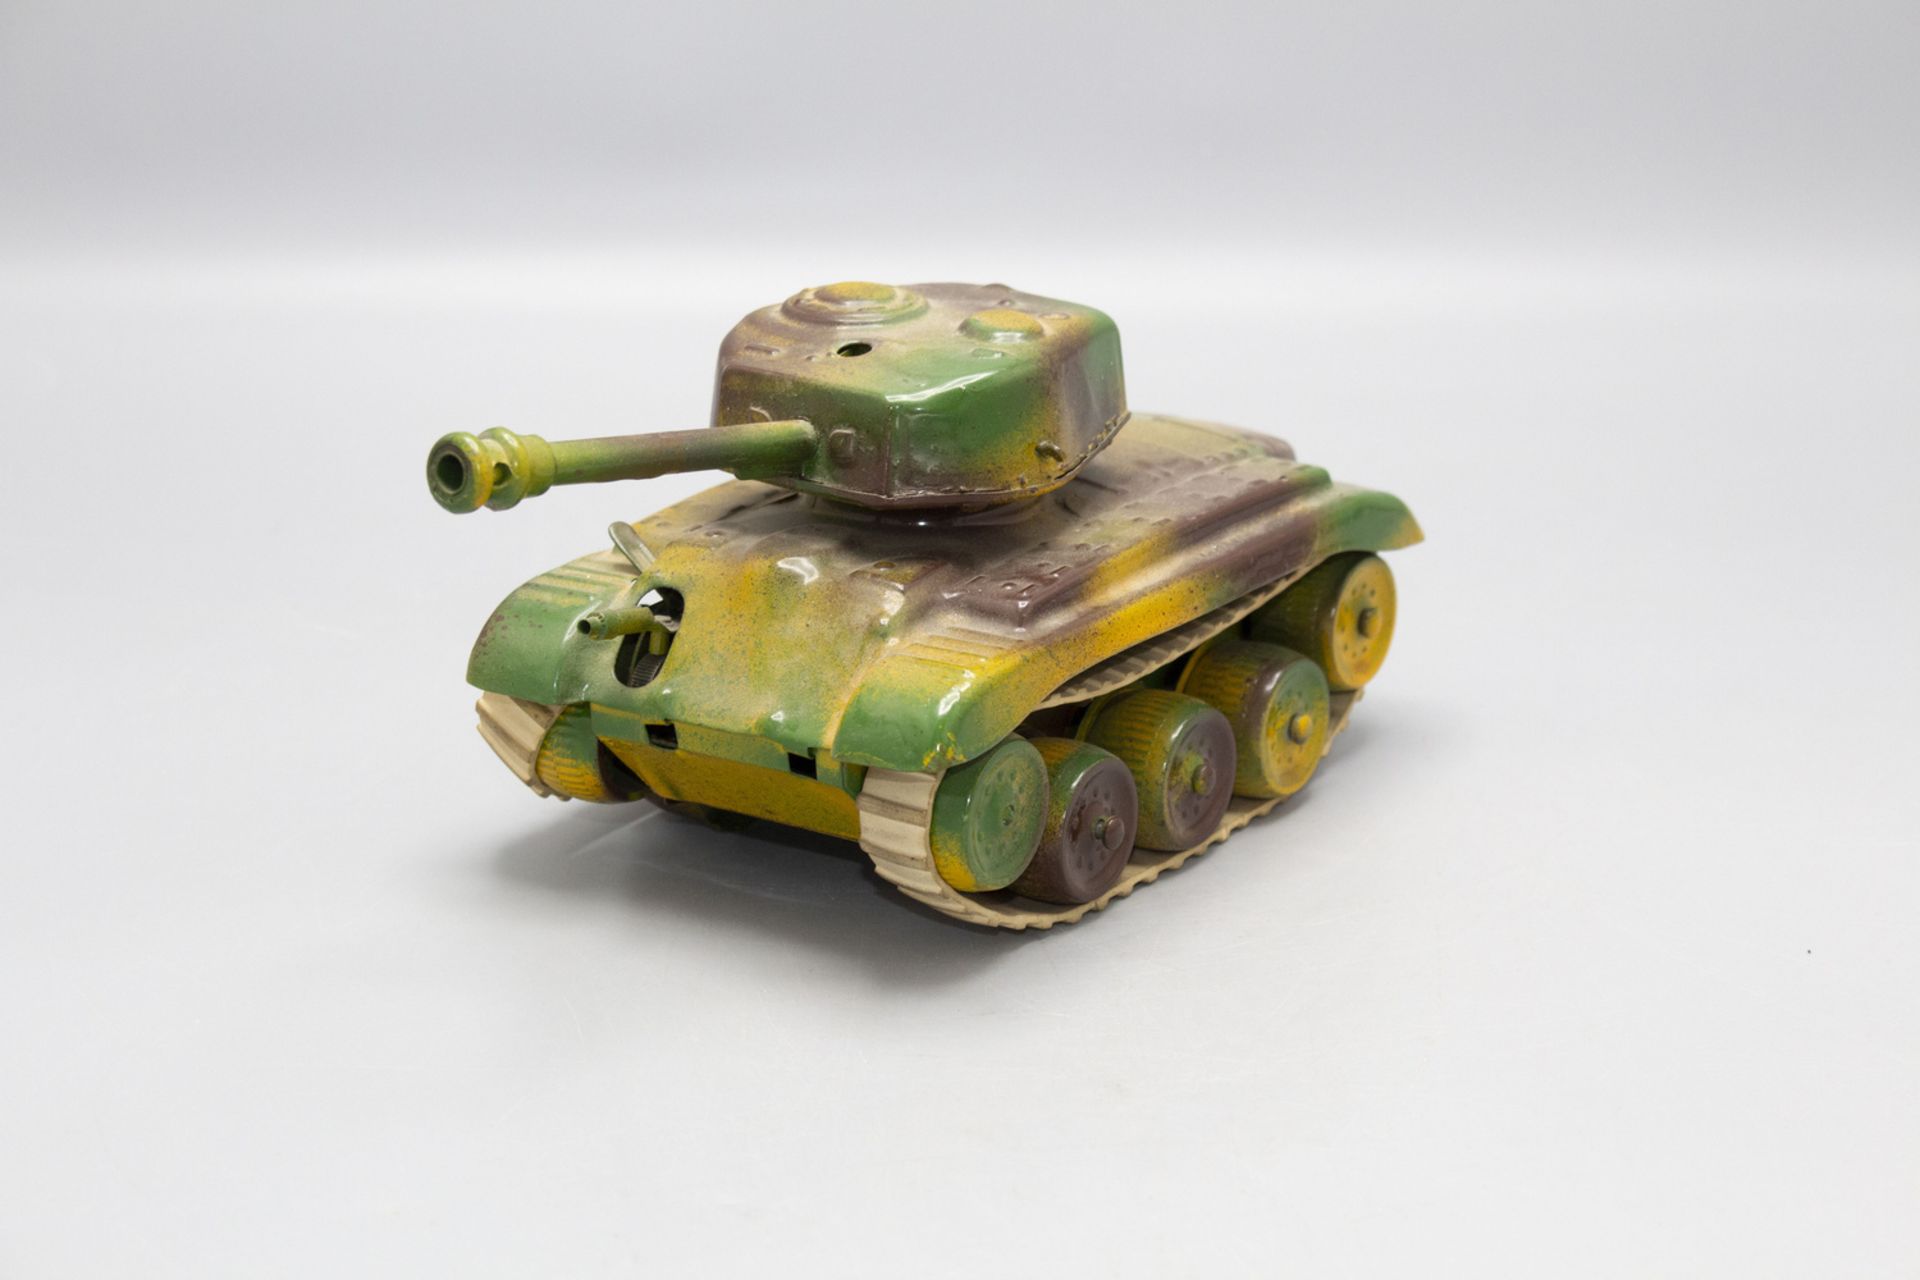 Spielzeugpanzer / A toy tank